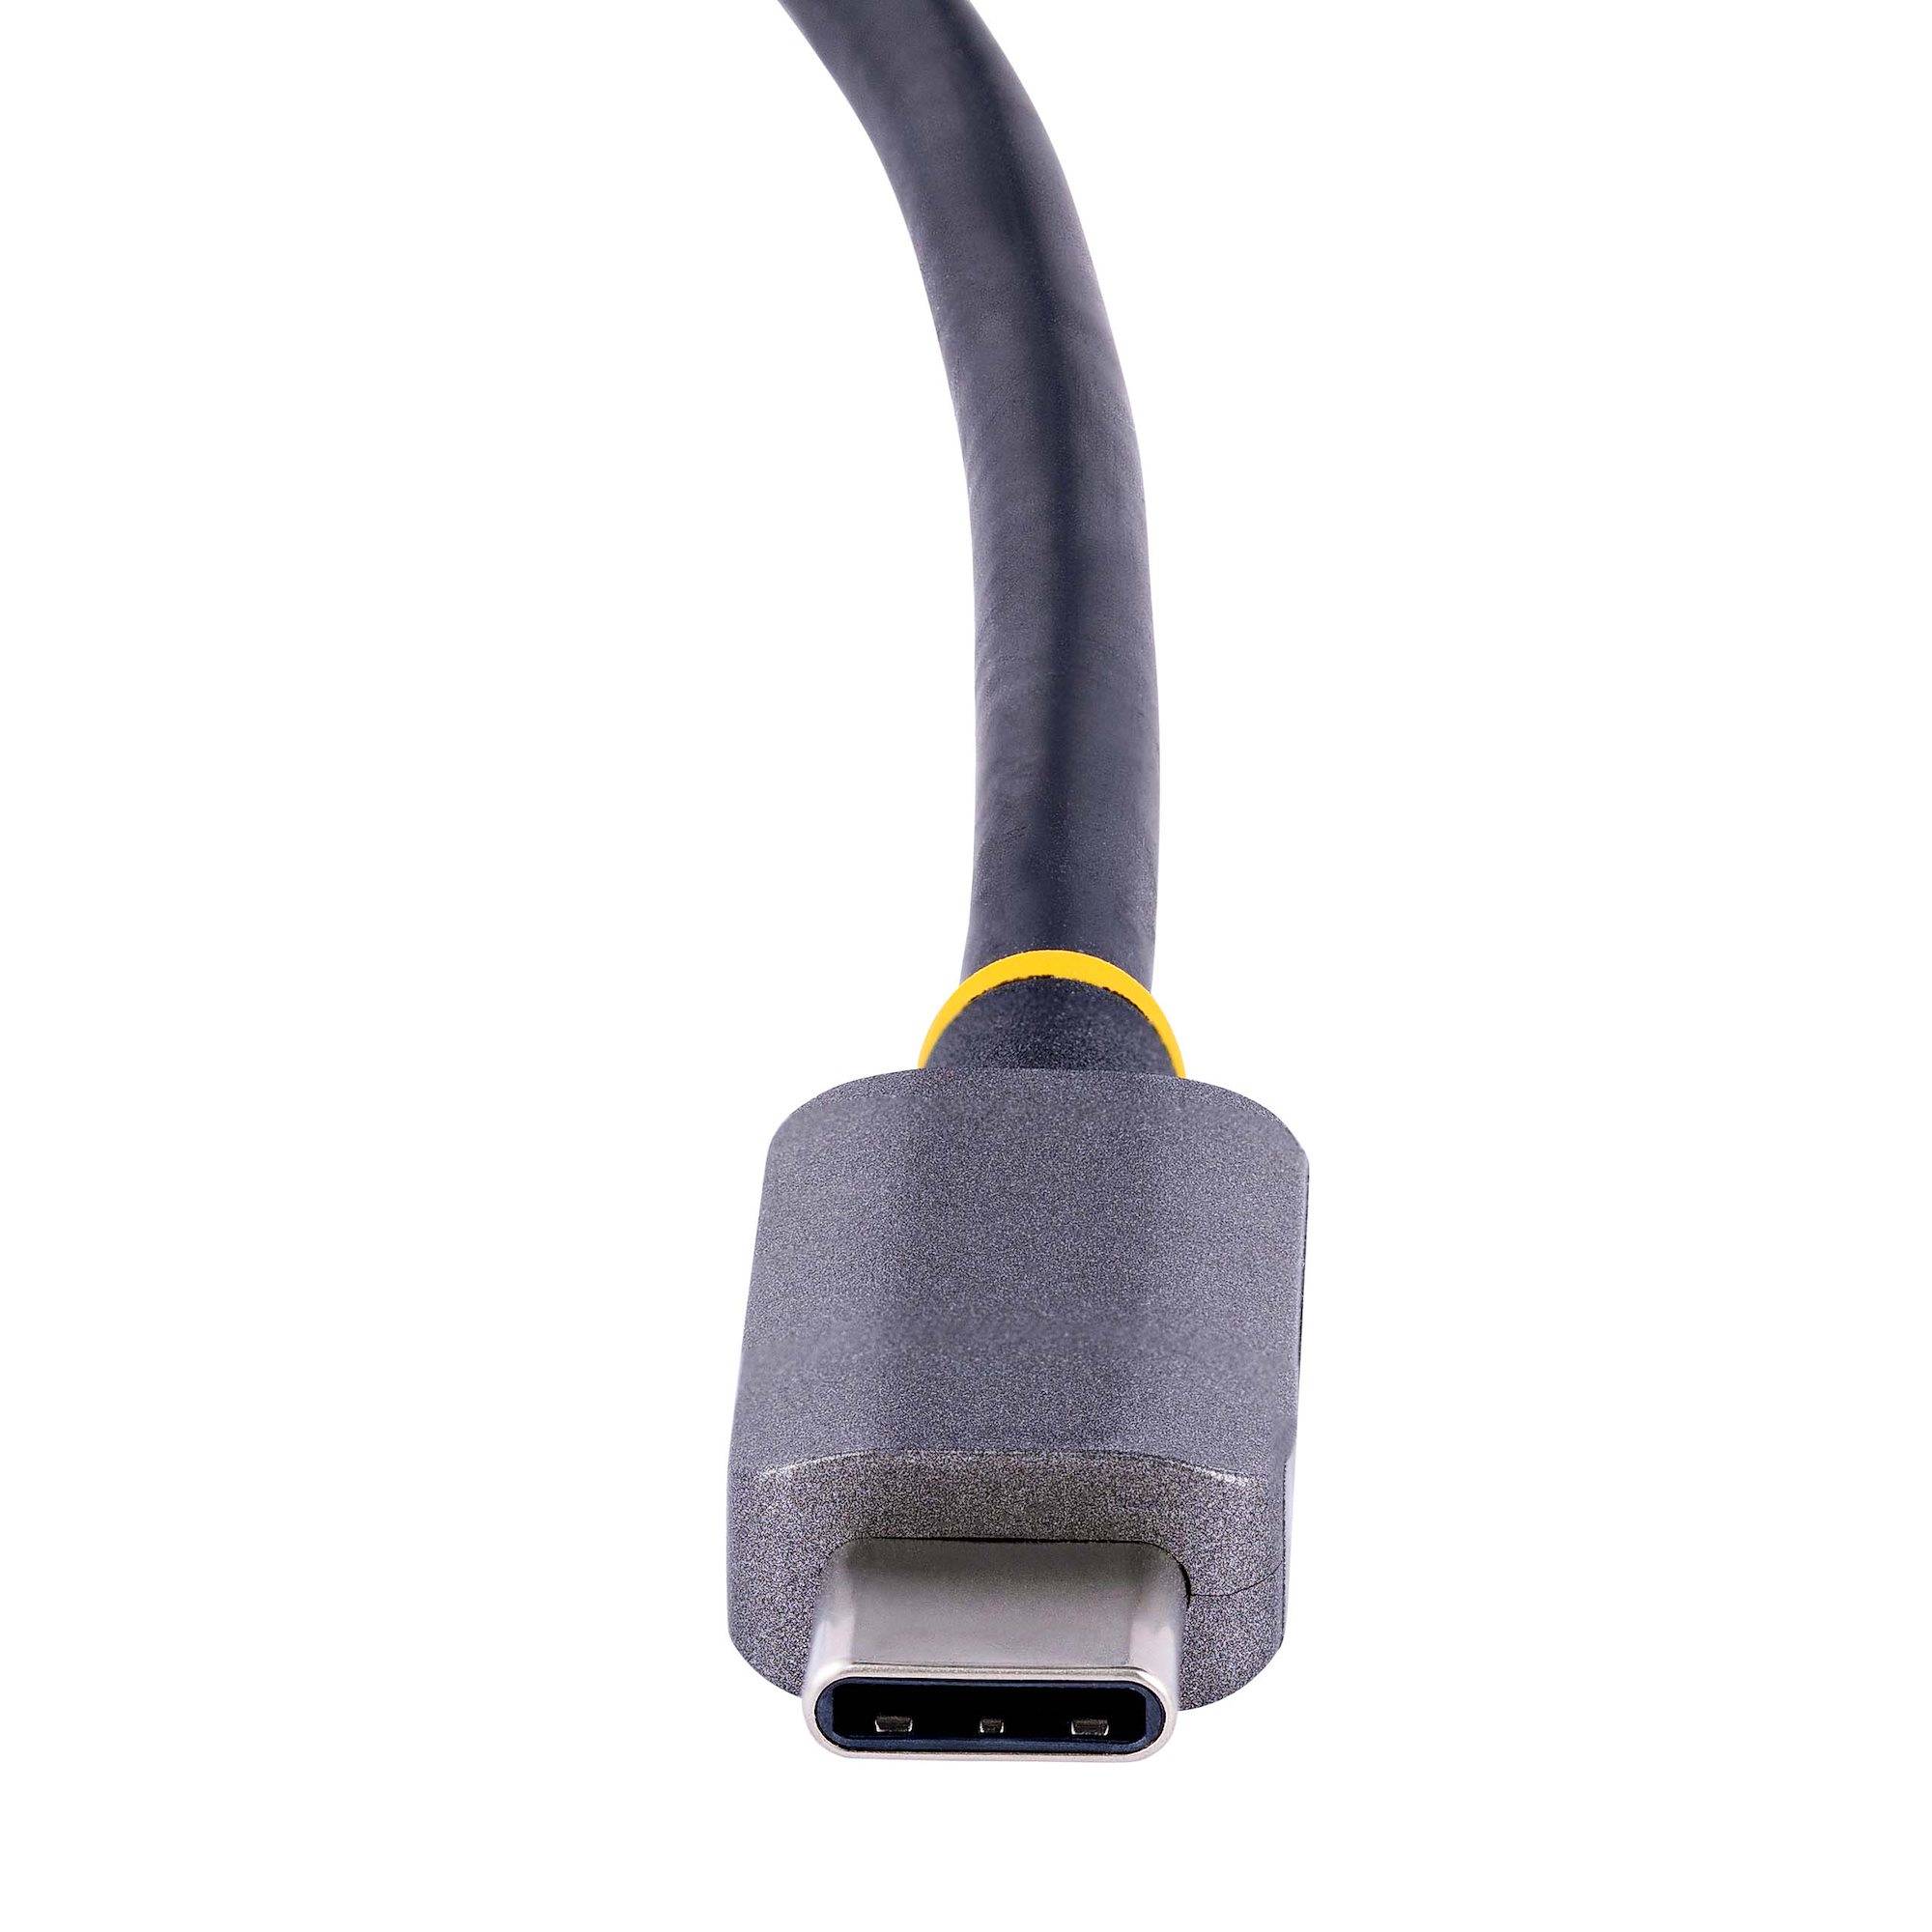 Rca Informatique - image du produit : USB C VIDEO ADAPTER HDMI/VGA - 4K 60HZ 3.5MM AUDIO 100W PD